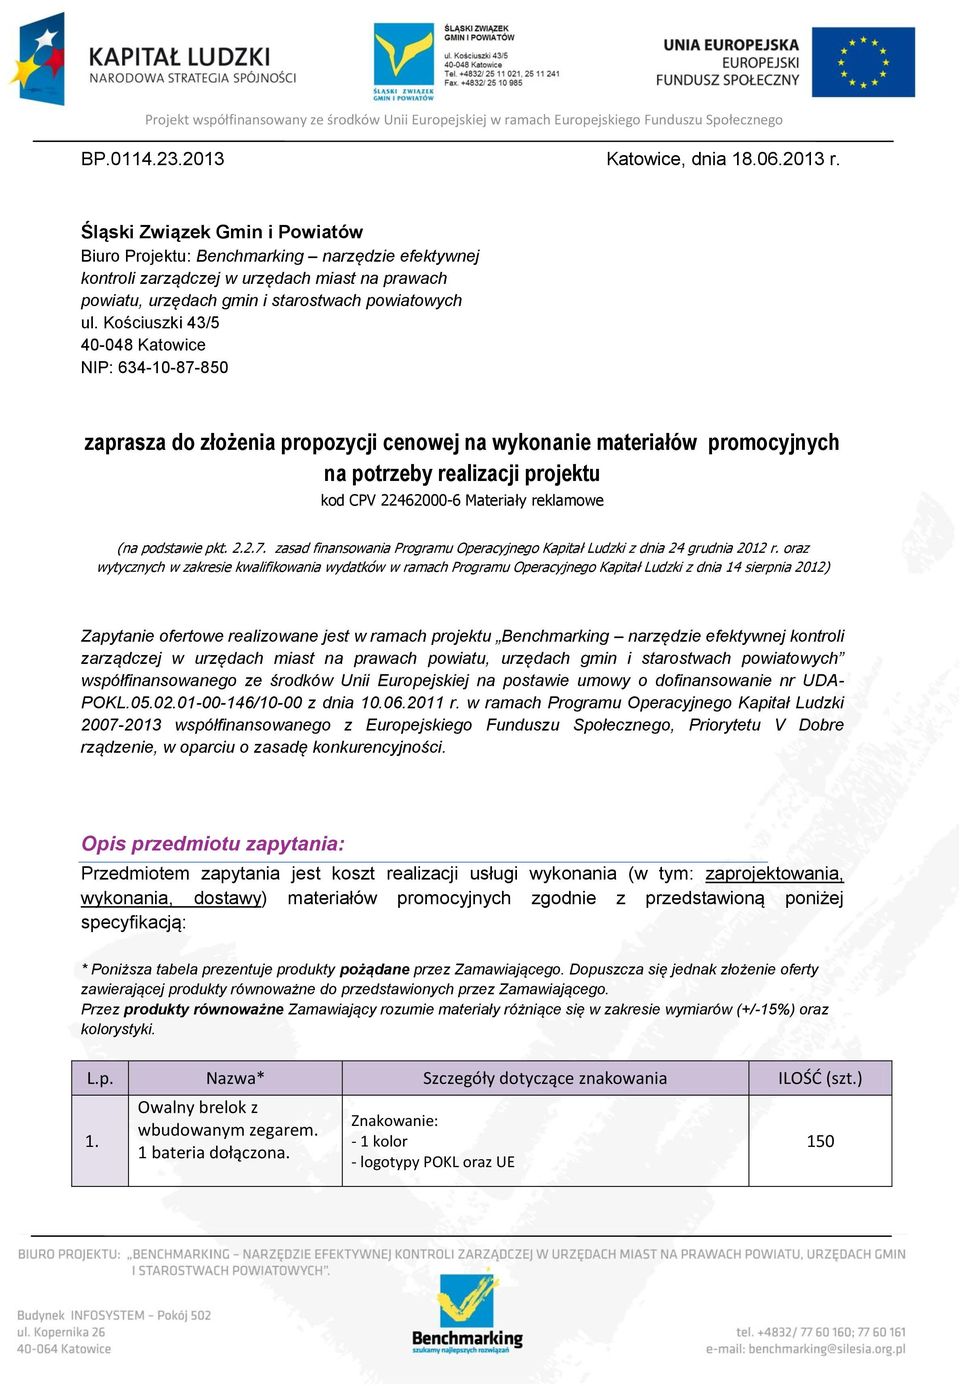 Kościuszki 43/5 40-048 Katowice NIP: 634-10-87-8 zaprasza do złożenia propozycji cenowej na wykonanie materiałów promocyjnych na potrzeby realizacji projektu kod CPV 22462000-6 Materiały reklamowe